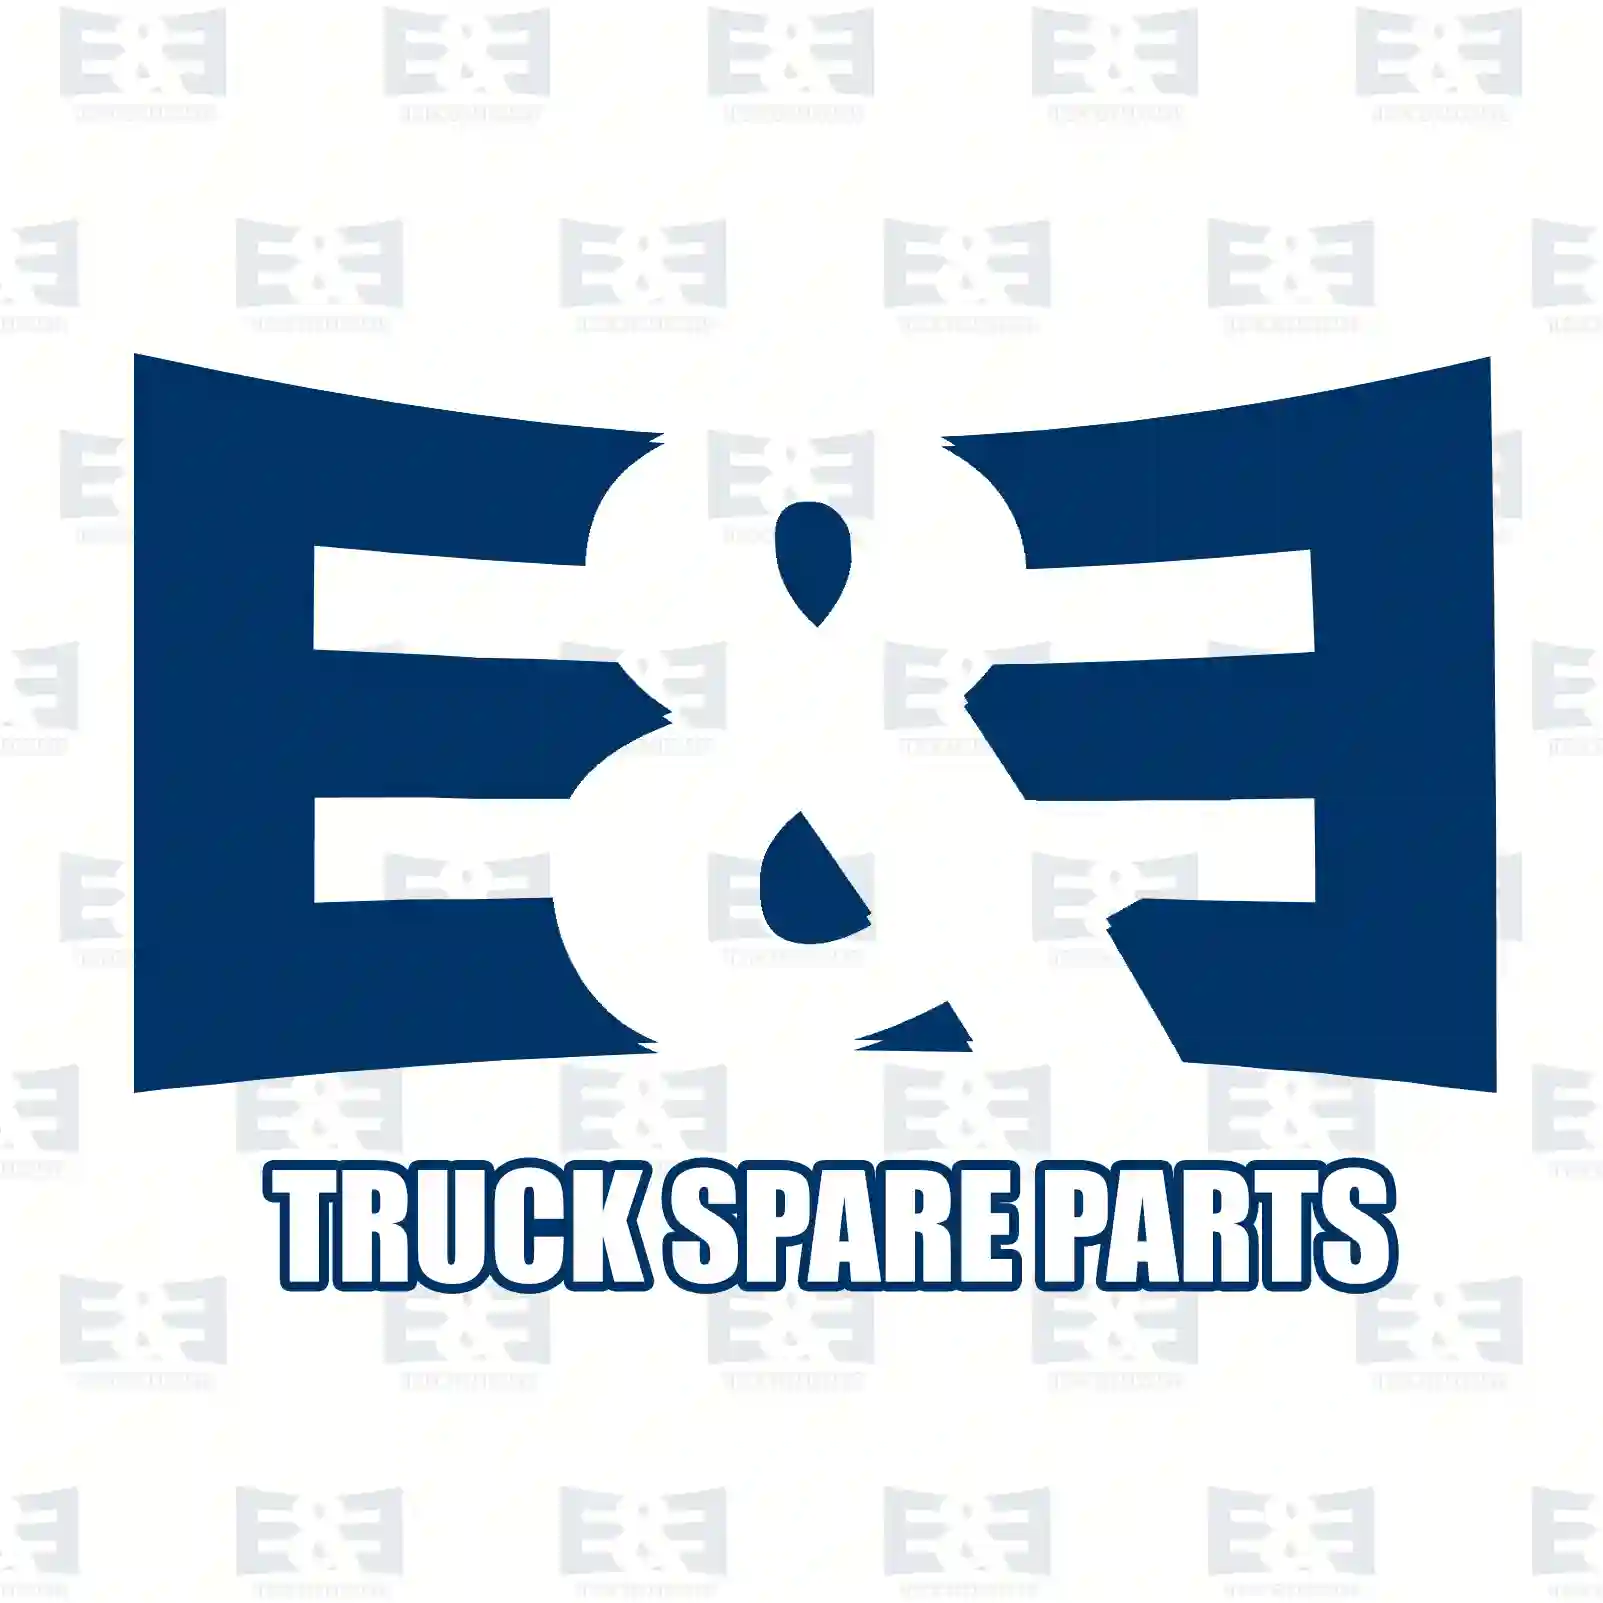 Fan with clutch, 2E2201480, 51066007037, 51066007051, 51066007058 ||  2E2201480 E&E Truck Spare Parts | Truck Spare Parts, Auotomotive Spare Parts Fan with clutch, 2E2201480, 51066007037, 51066007051, 51066007058 ||  2E2201480 E&E Truck Spare Parts | Truck Spare Parts, Auotomotive Spare Parts